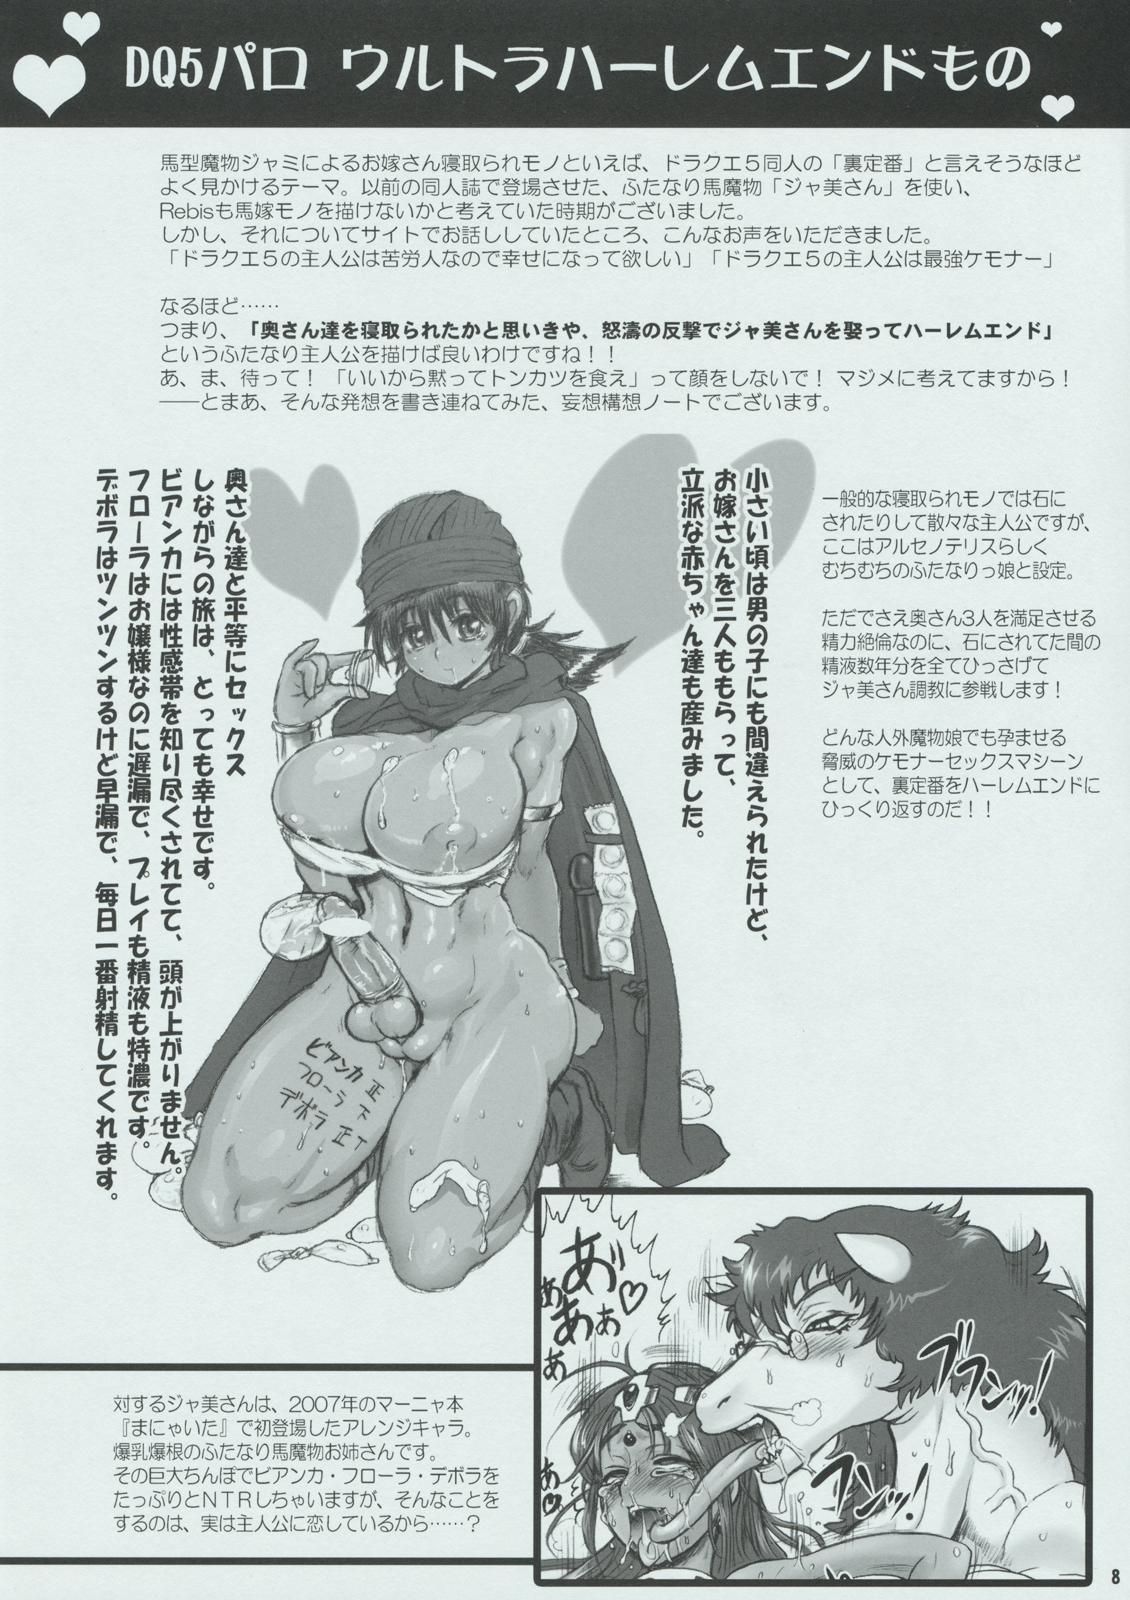 Teenxxx (Futaket 05) [Arsenothelus (Rebis)] Arsenothelus Kousou (Mousou) Note (Dragon Quest, Street Fighter) - Street fighter Blow Job - Page 8